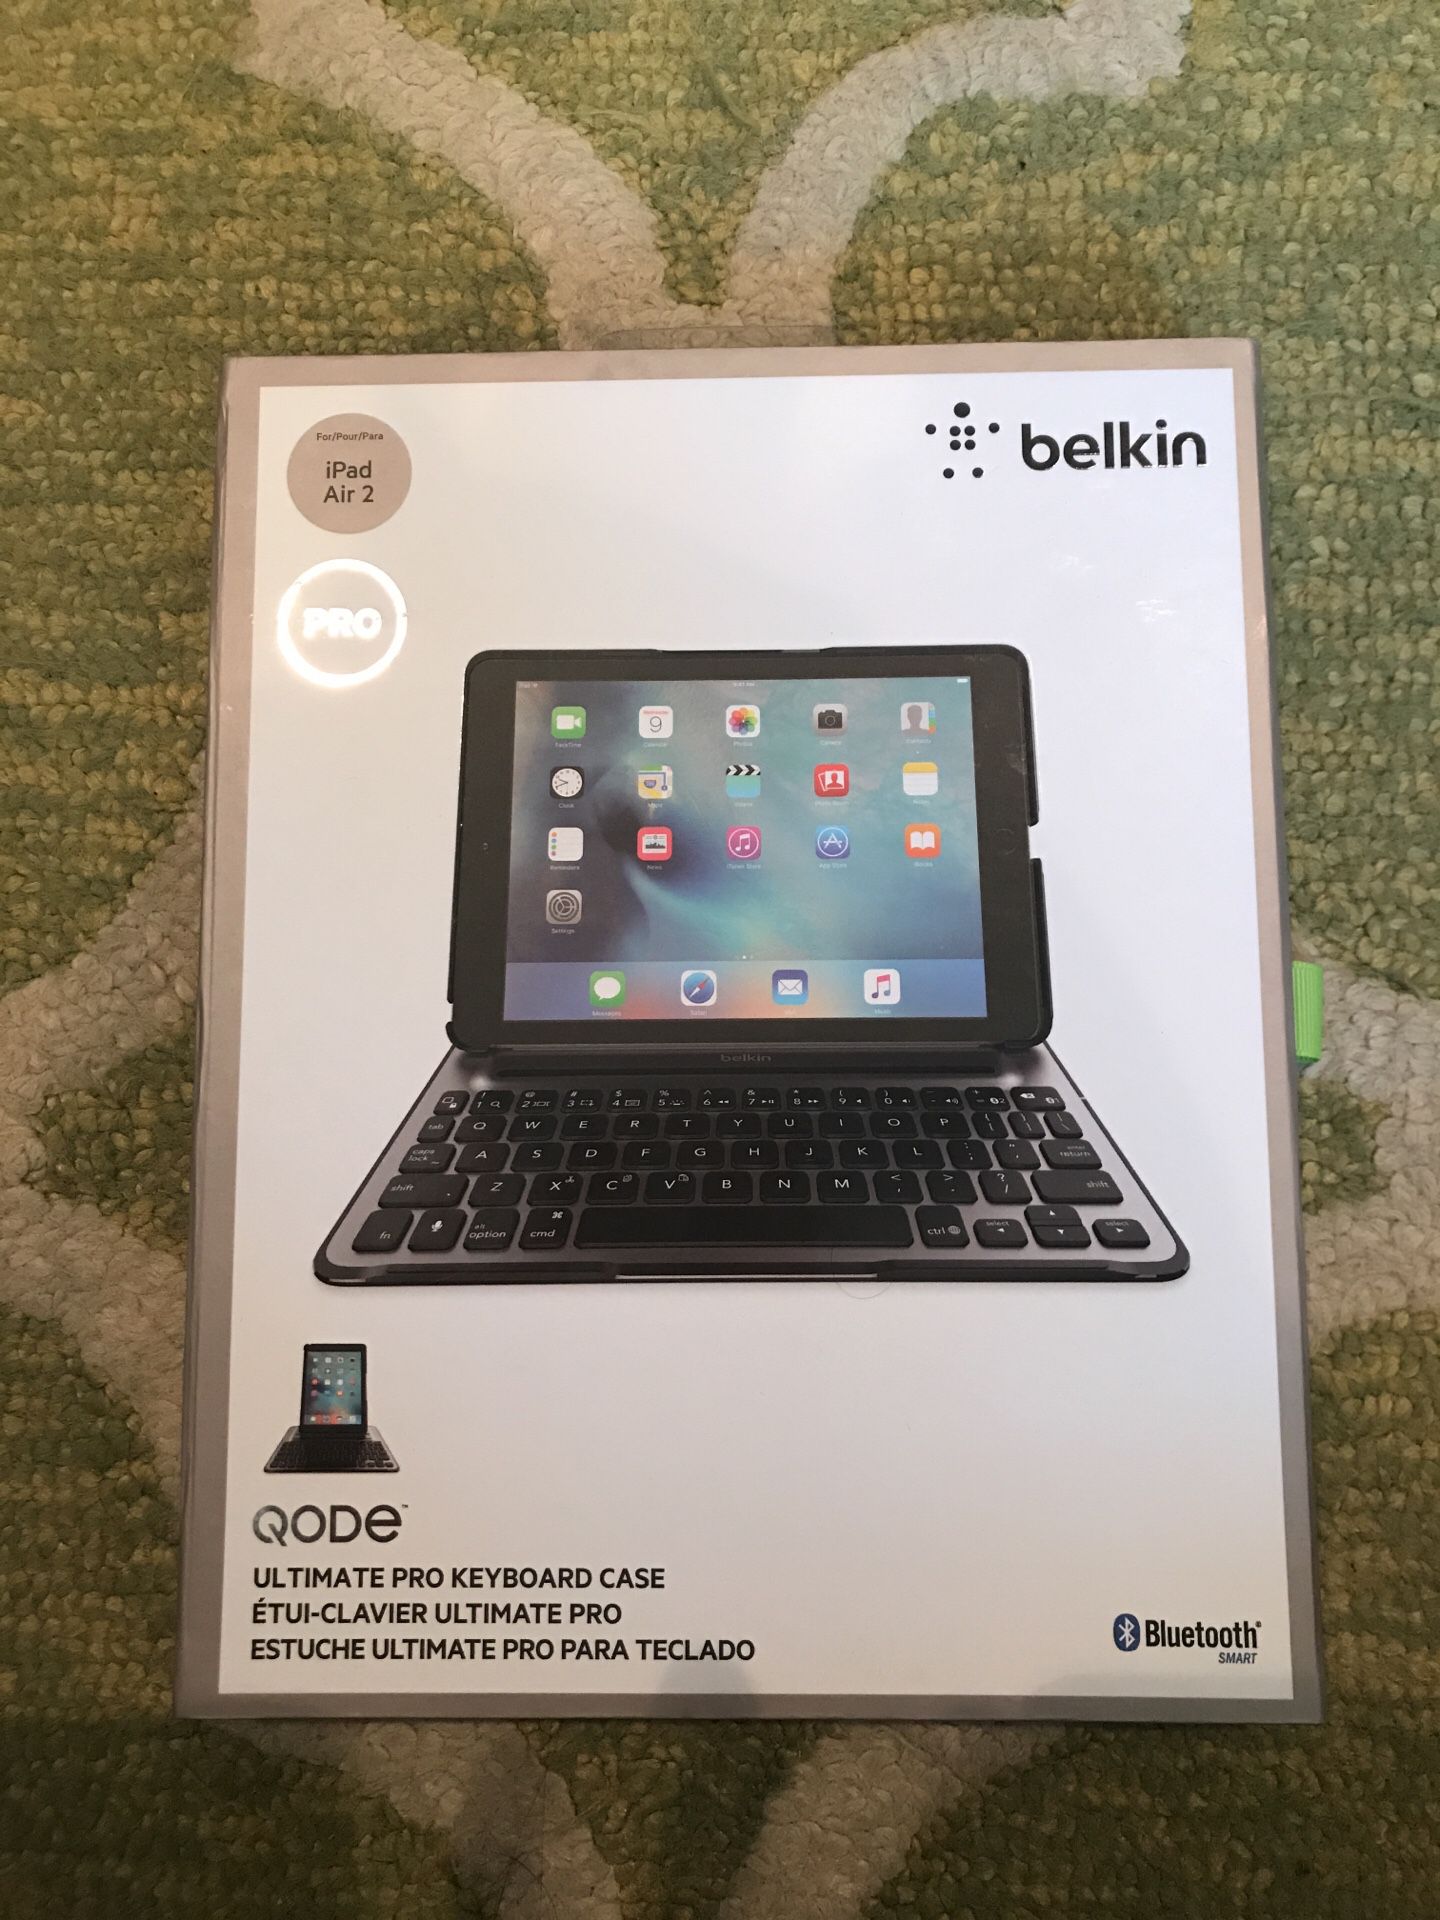 Belkin Pro - QODE Ultimate Pro Keyboard Case for iPad Air 2